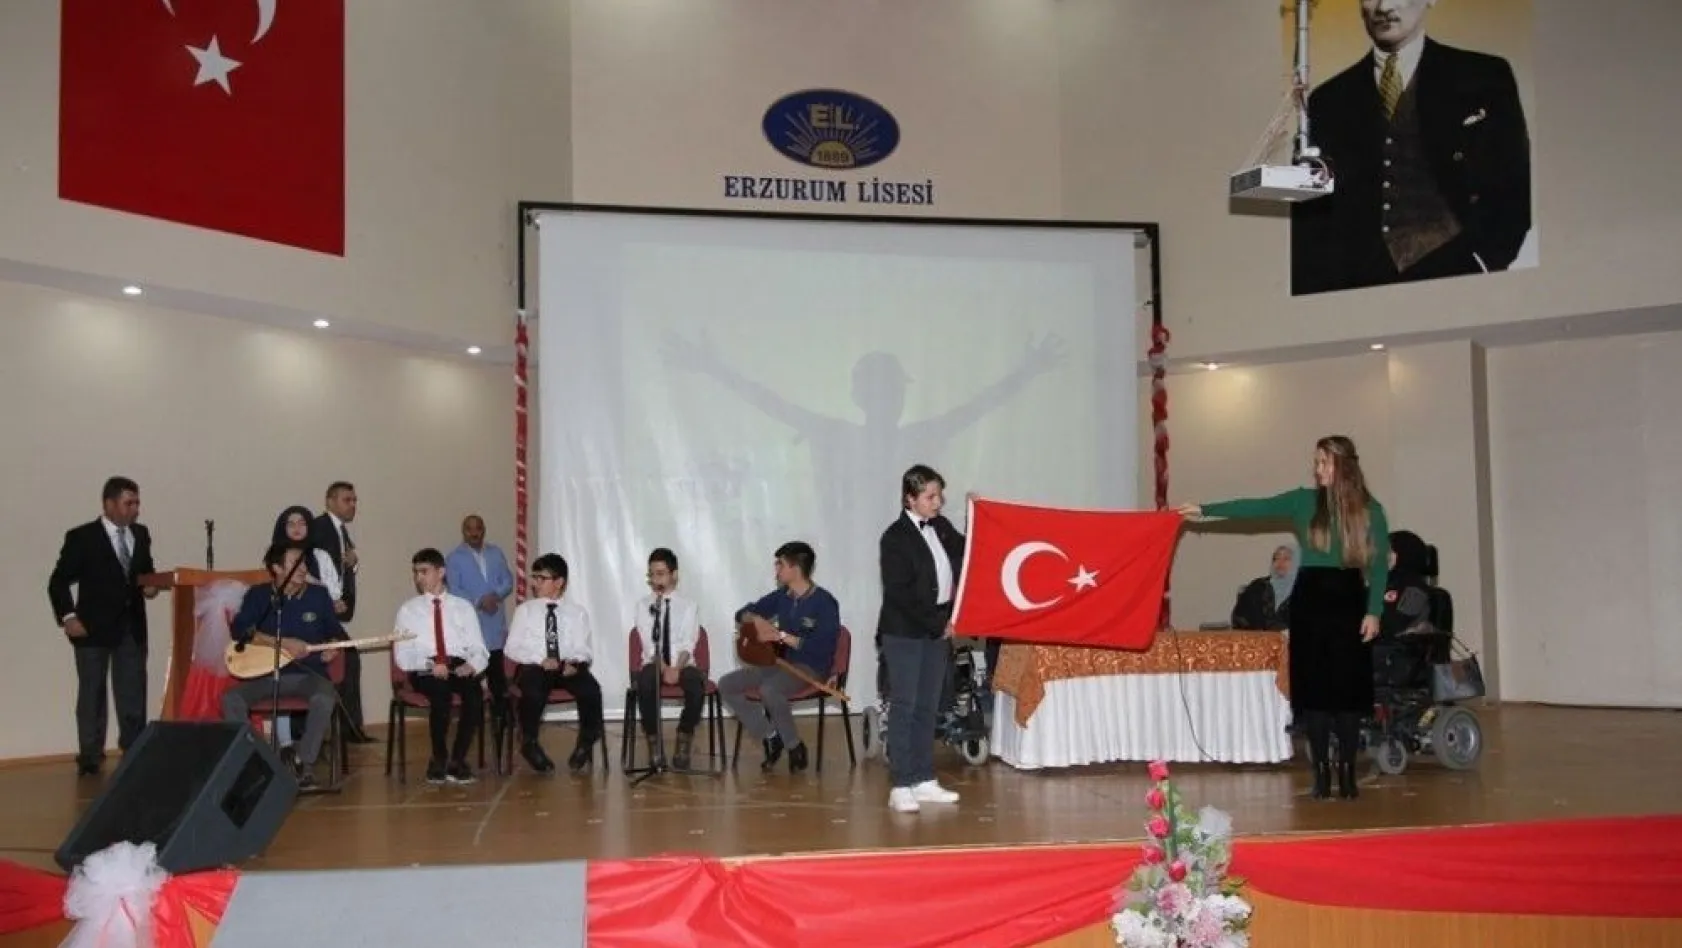 Erzurum Lisesi'nden anlamlı etkinlik
